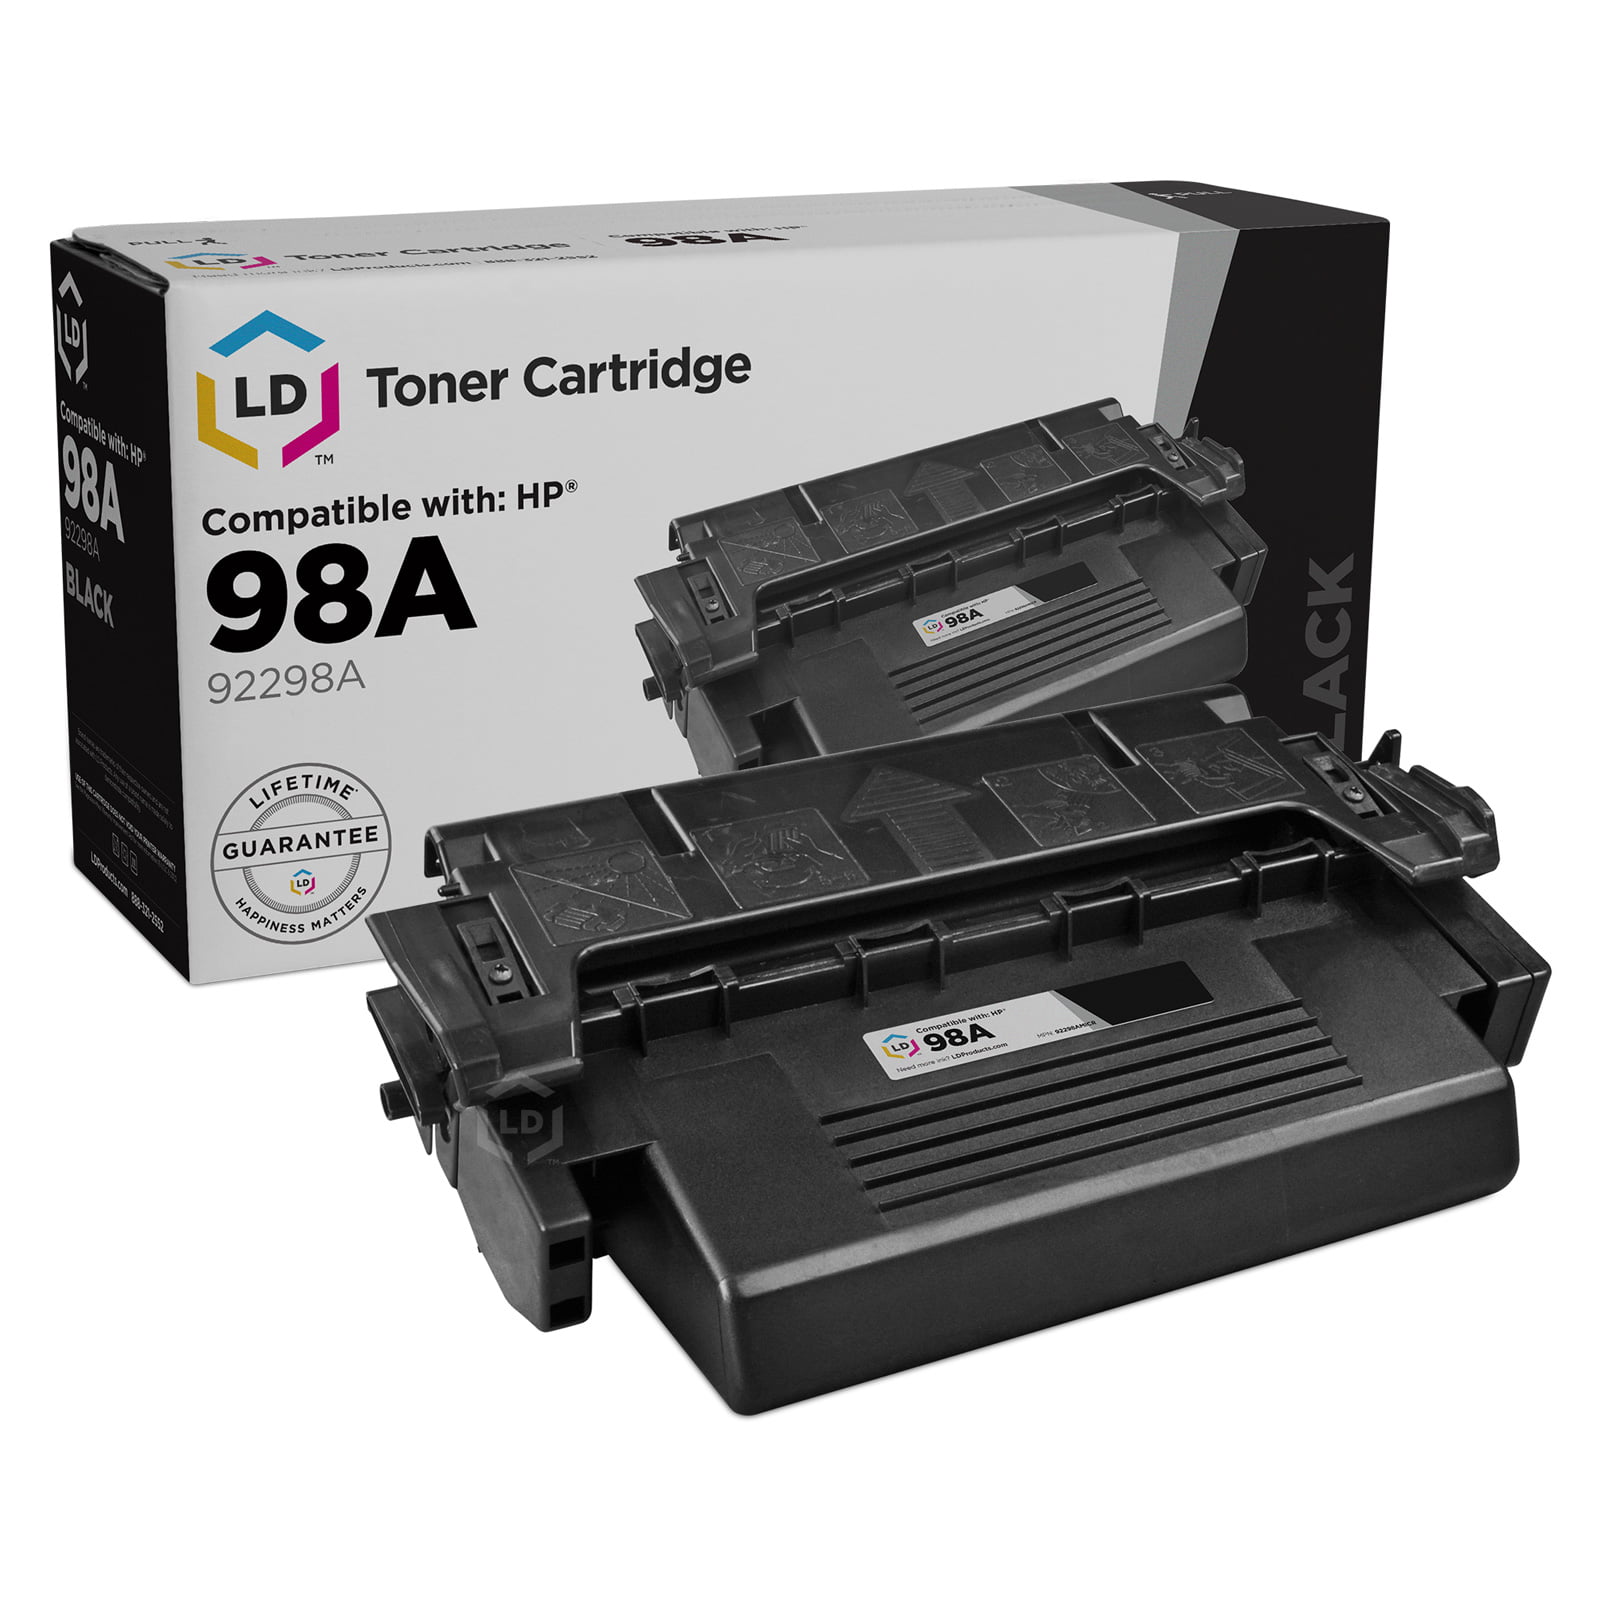 leksikon Udstråle Let at forstå LD Remanufactured Replacement for 98A 92298A Black Toner Cartridge for use  in LaserJet 4, 4 Plus, 4m, 4m Plus, 5, 5m, 5n, 5se - Walmart.com